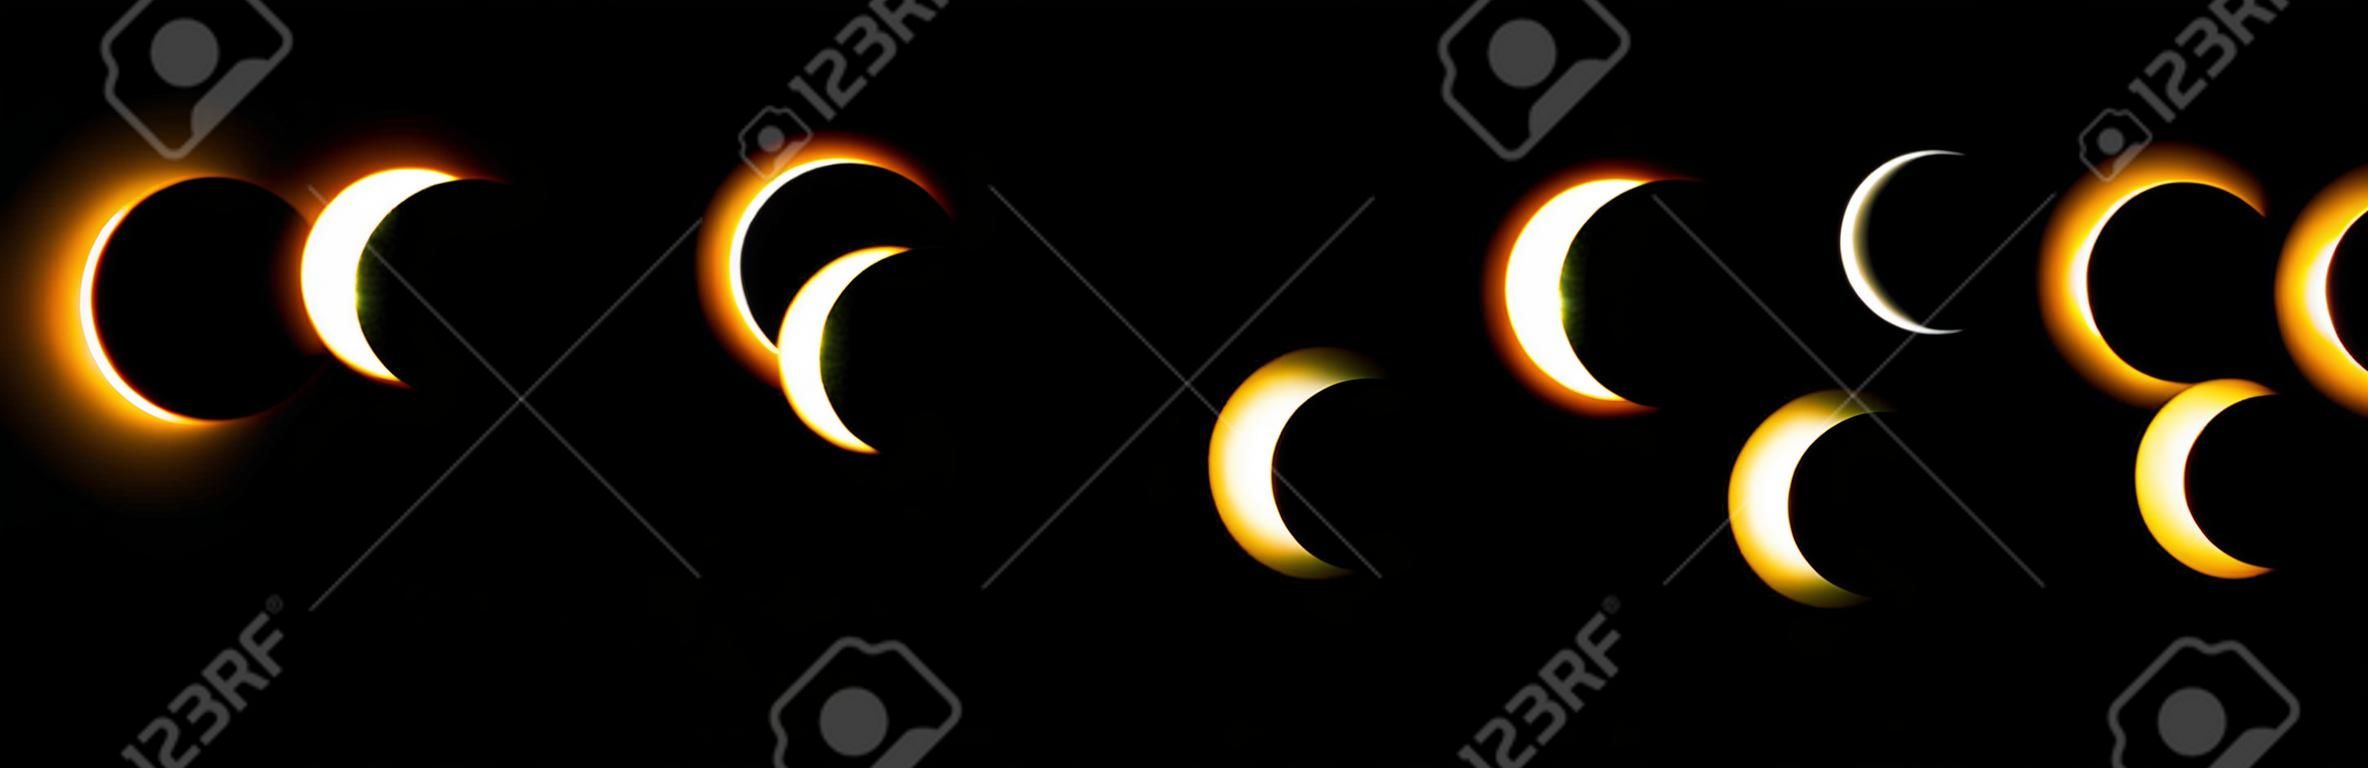 Diverse fasi dell'eclissi solare e lunare. Vettore